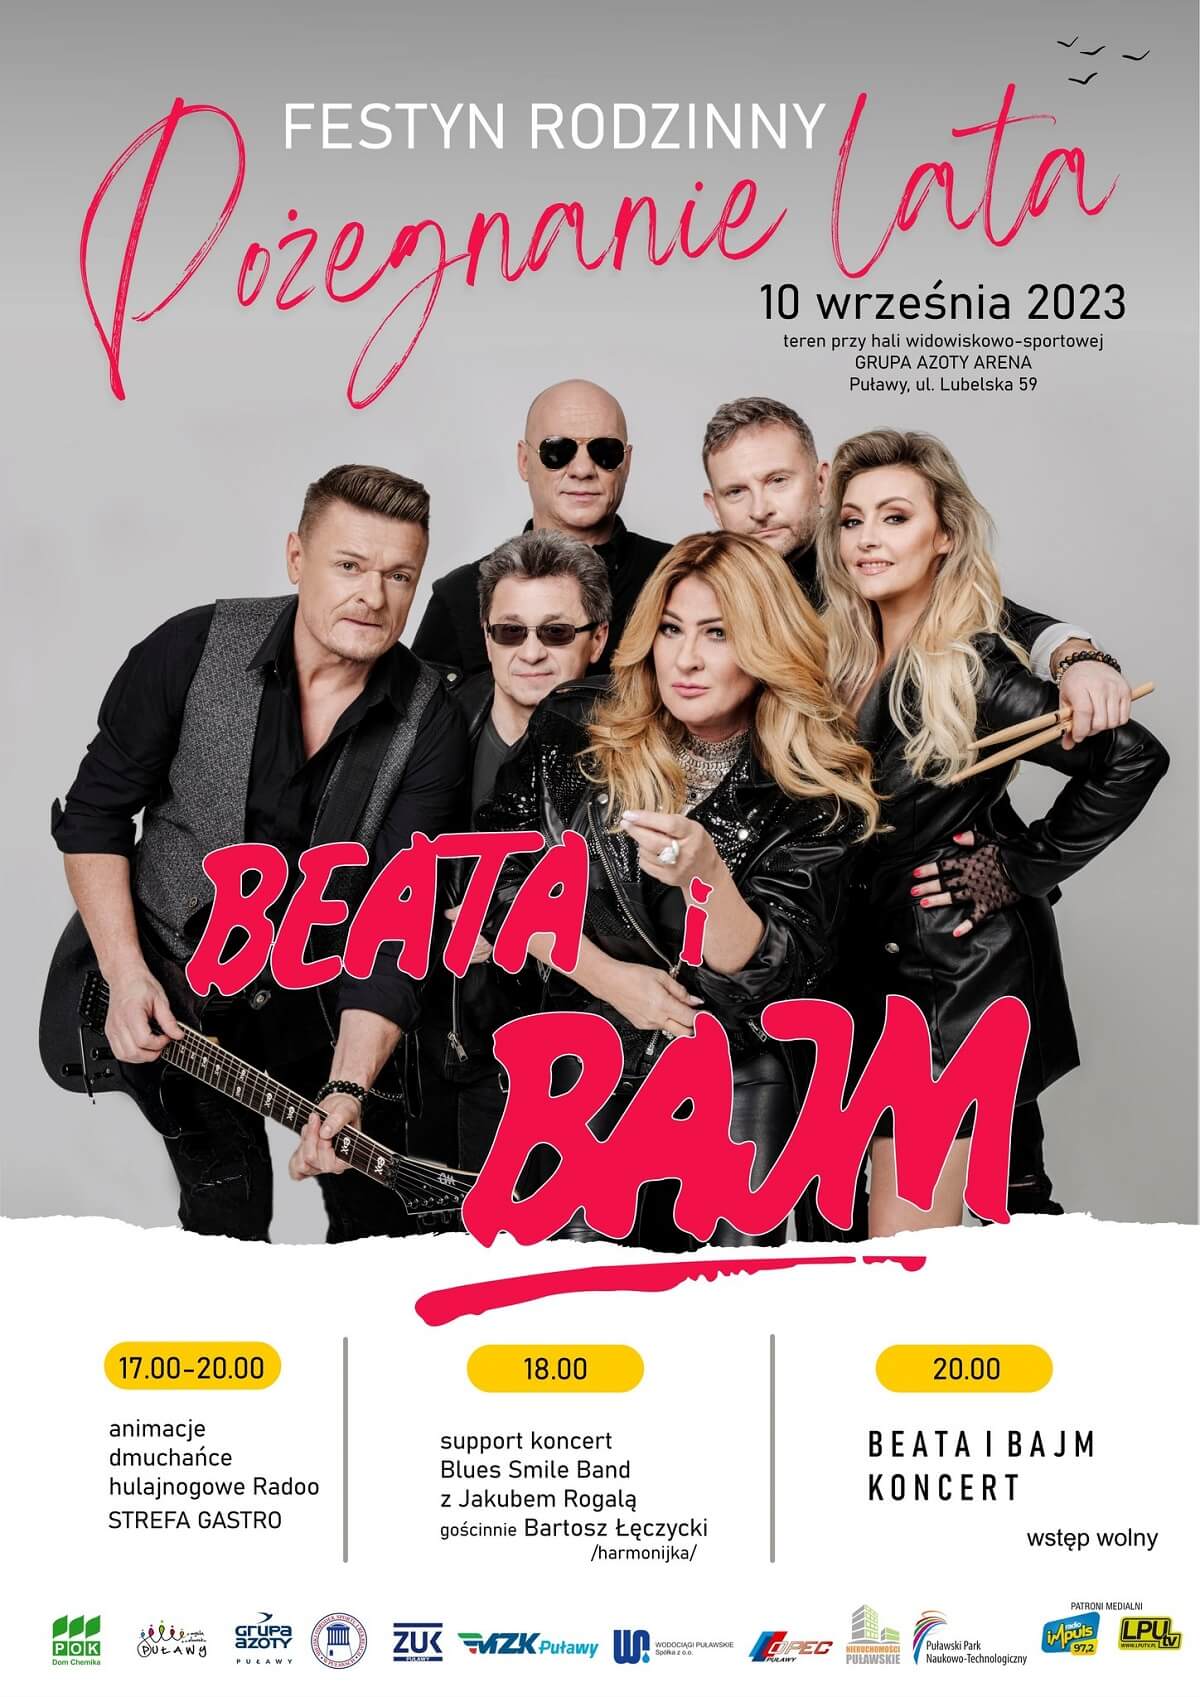 Festyn Pożegnanie Lata w Puławach 2023 - plakat, program wydarzenia